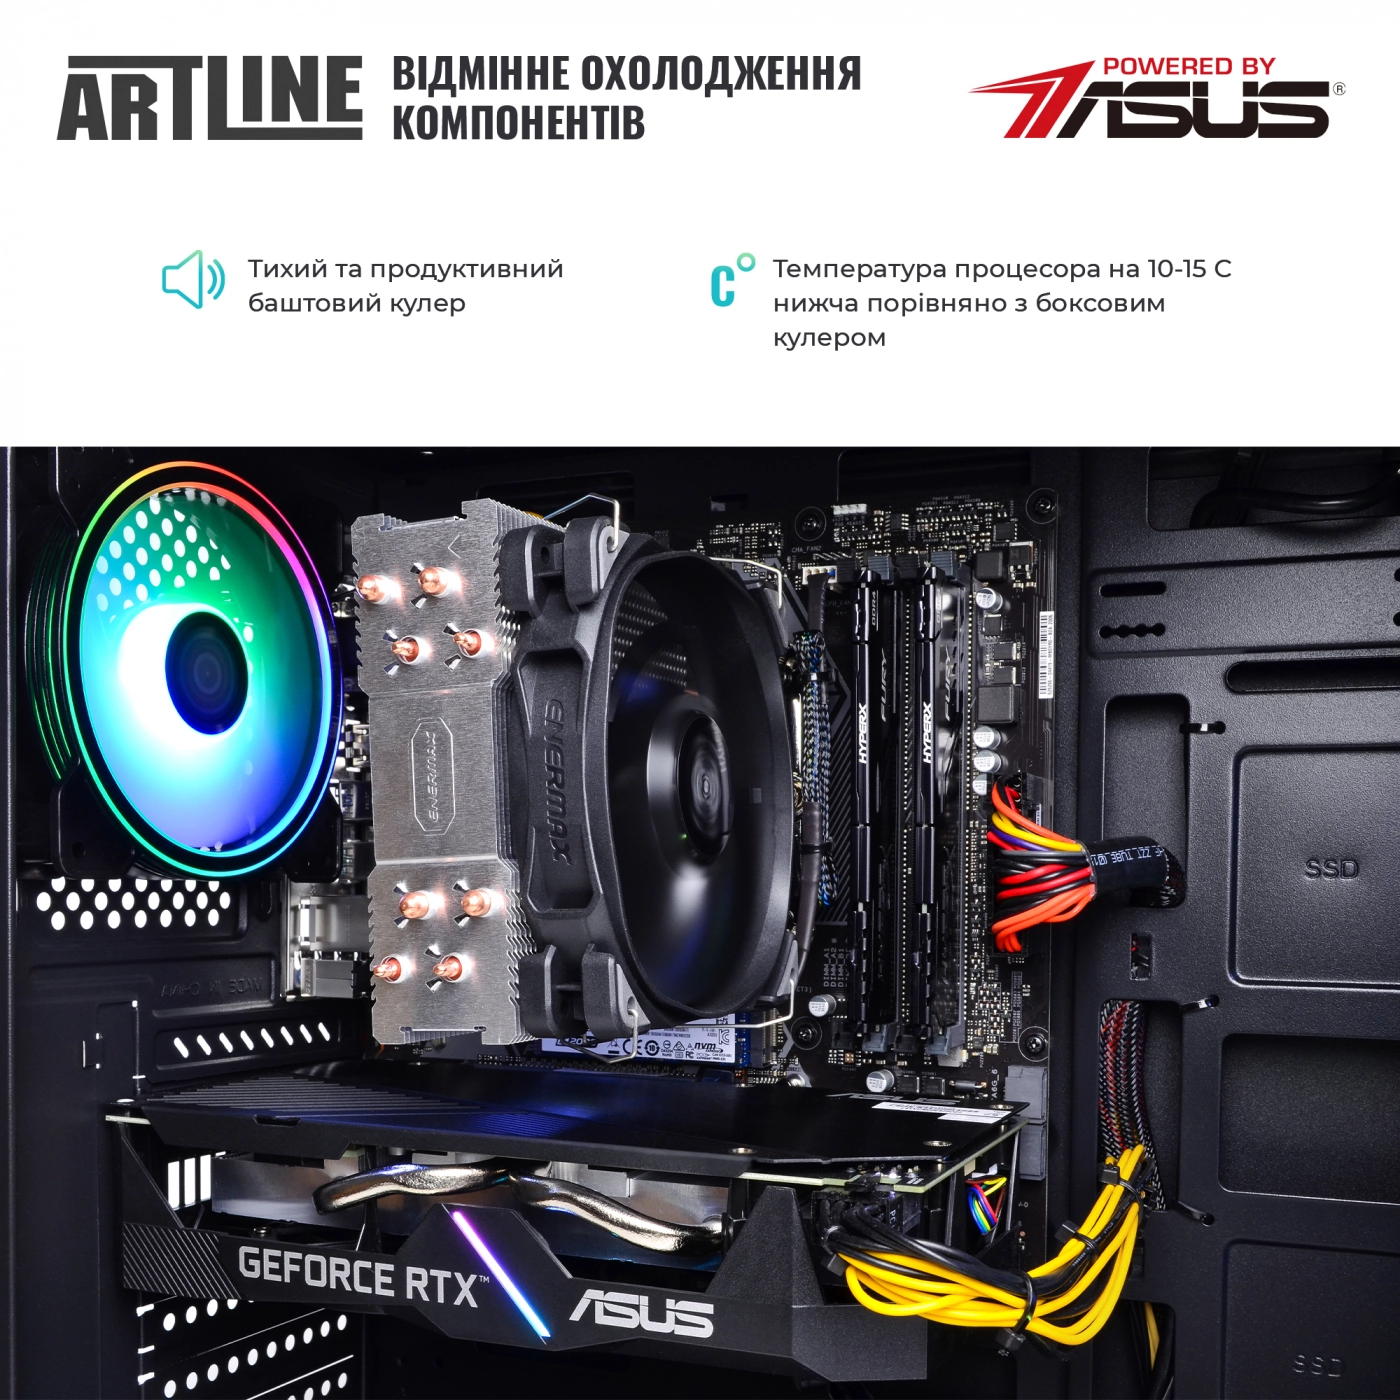 Купить Компьютер ARTLINE Gaming X66v18 - фото 7